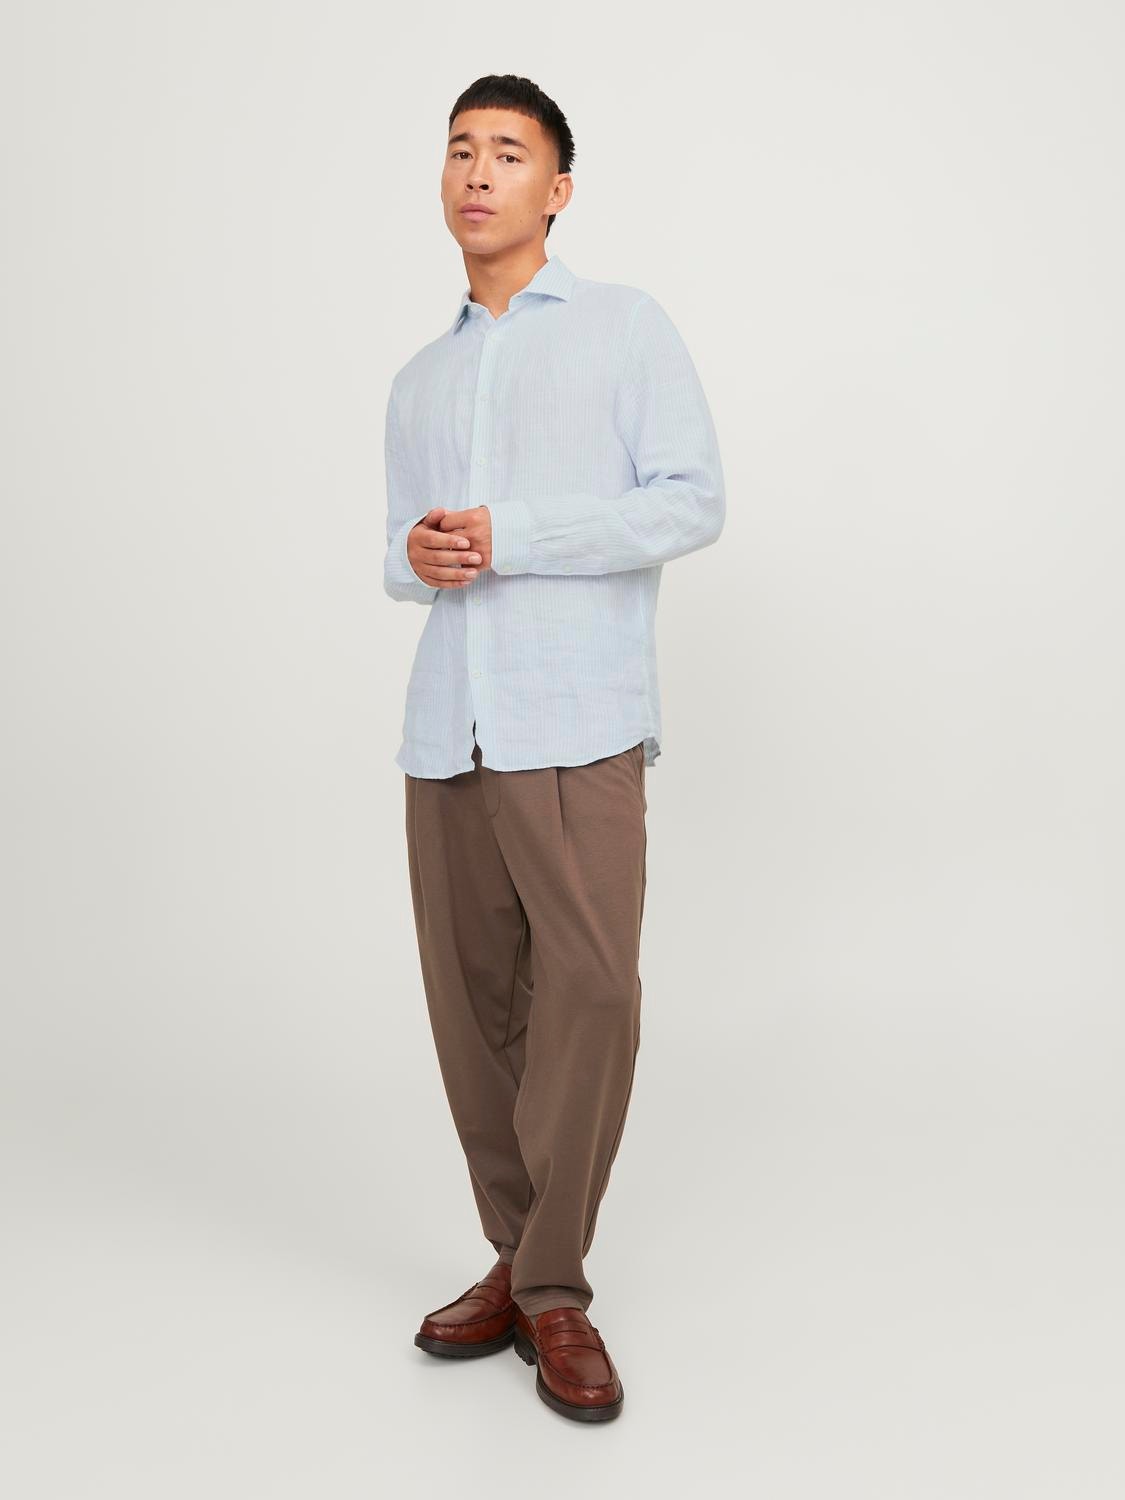 Jack & Jones Comfort Fit Shirt -Skyway - 12251673